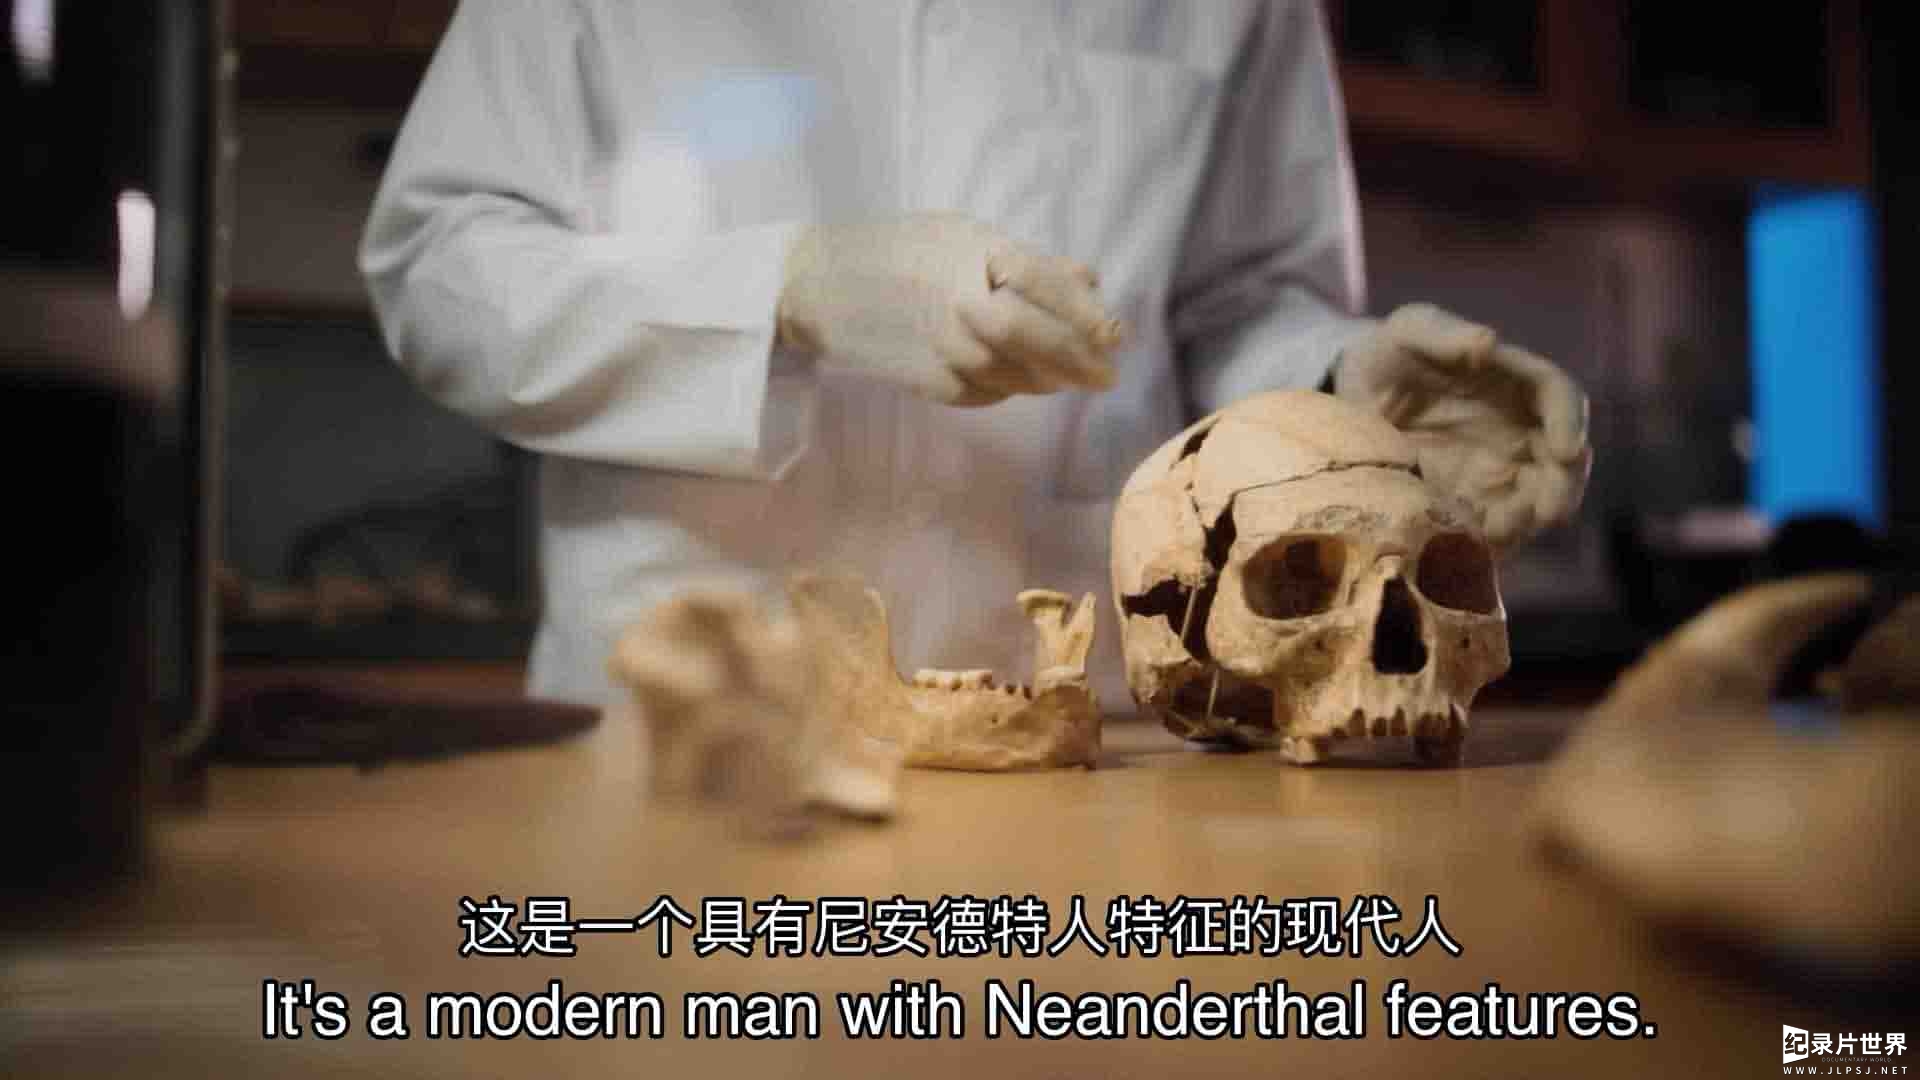 加拿大纪录片《尼安德特人启示录 Neanderthal Apocalypse 2015》第1季全2集